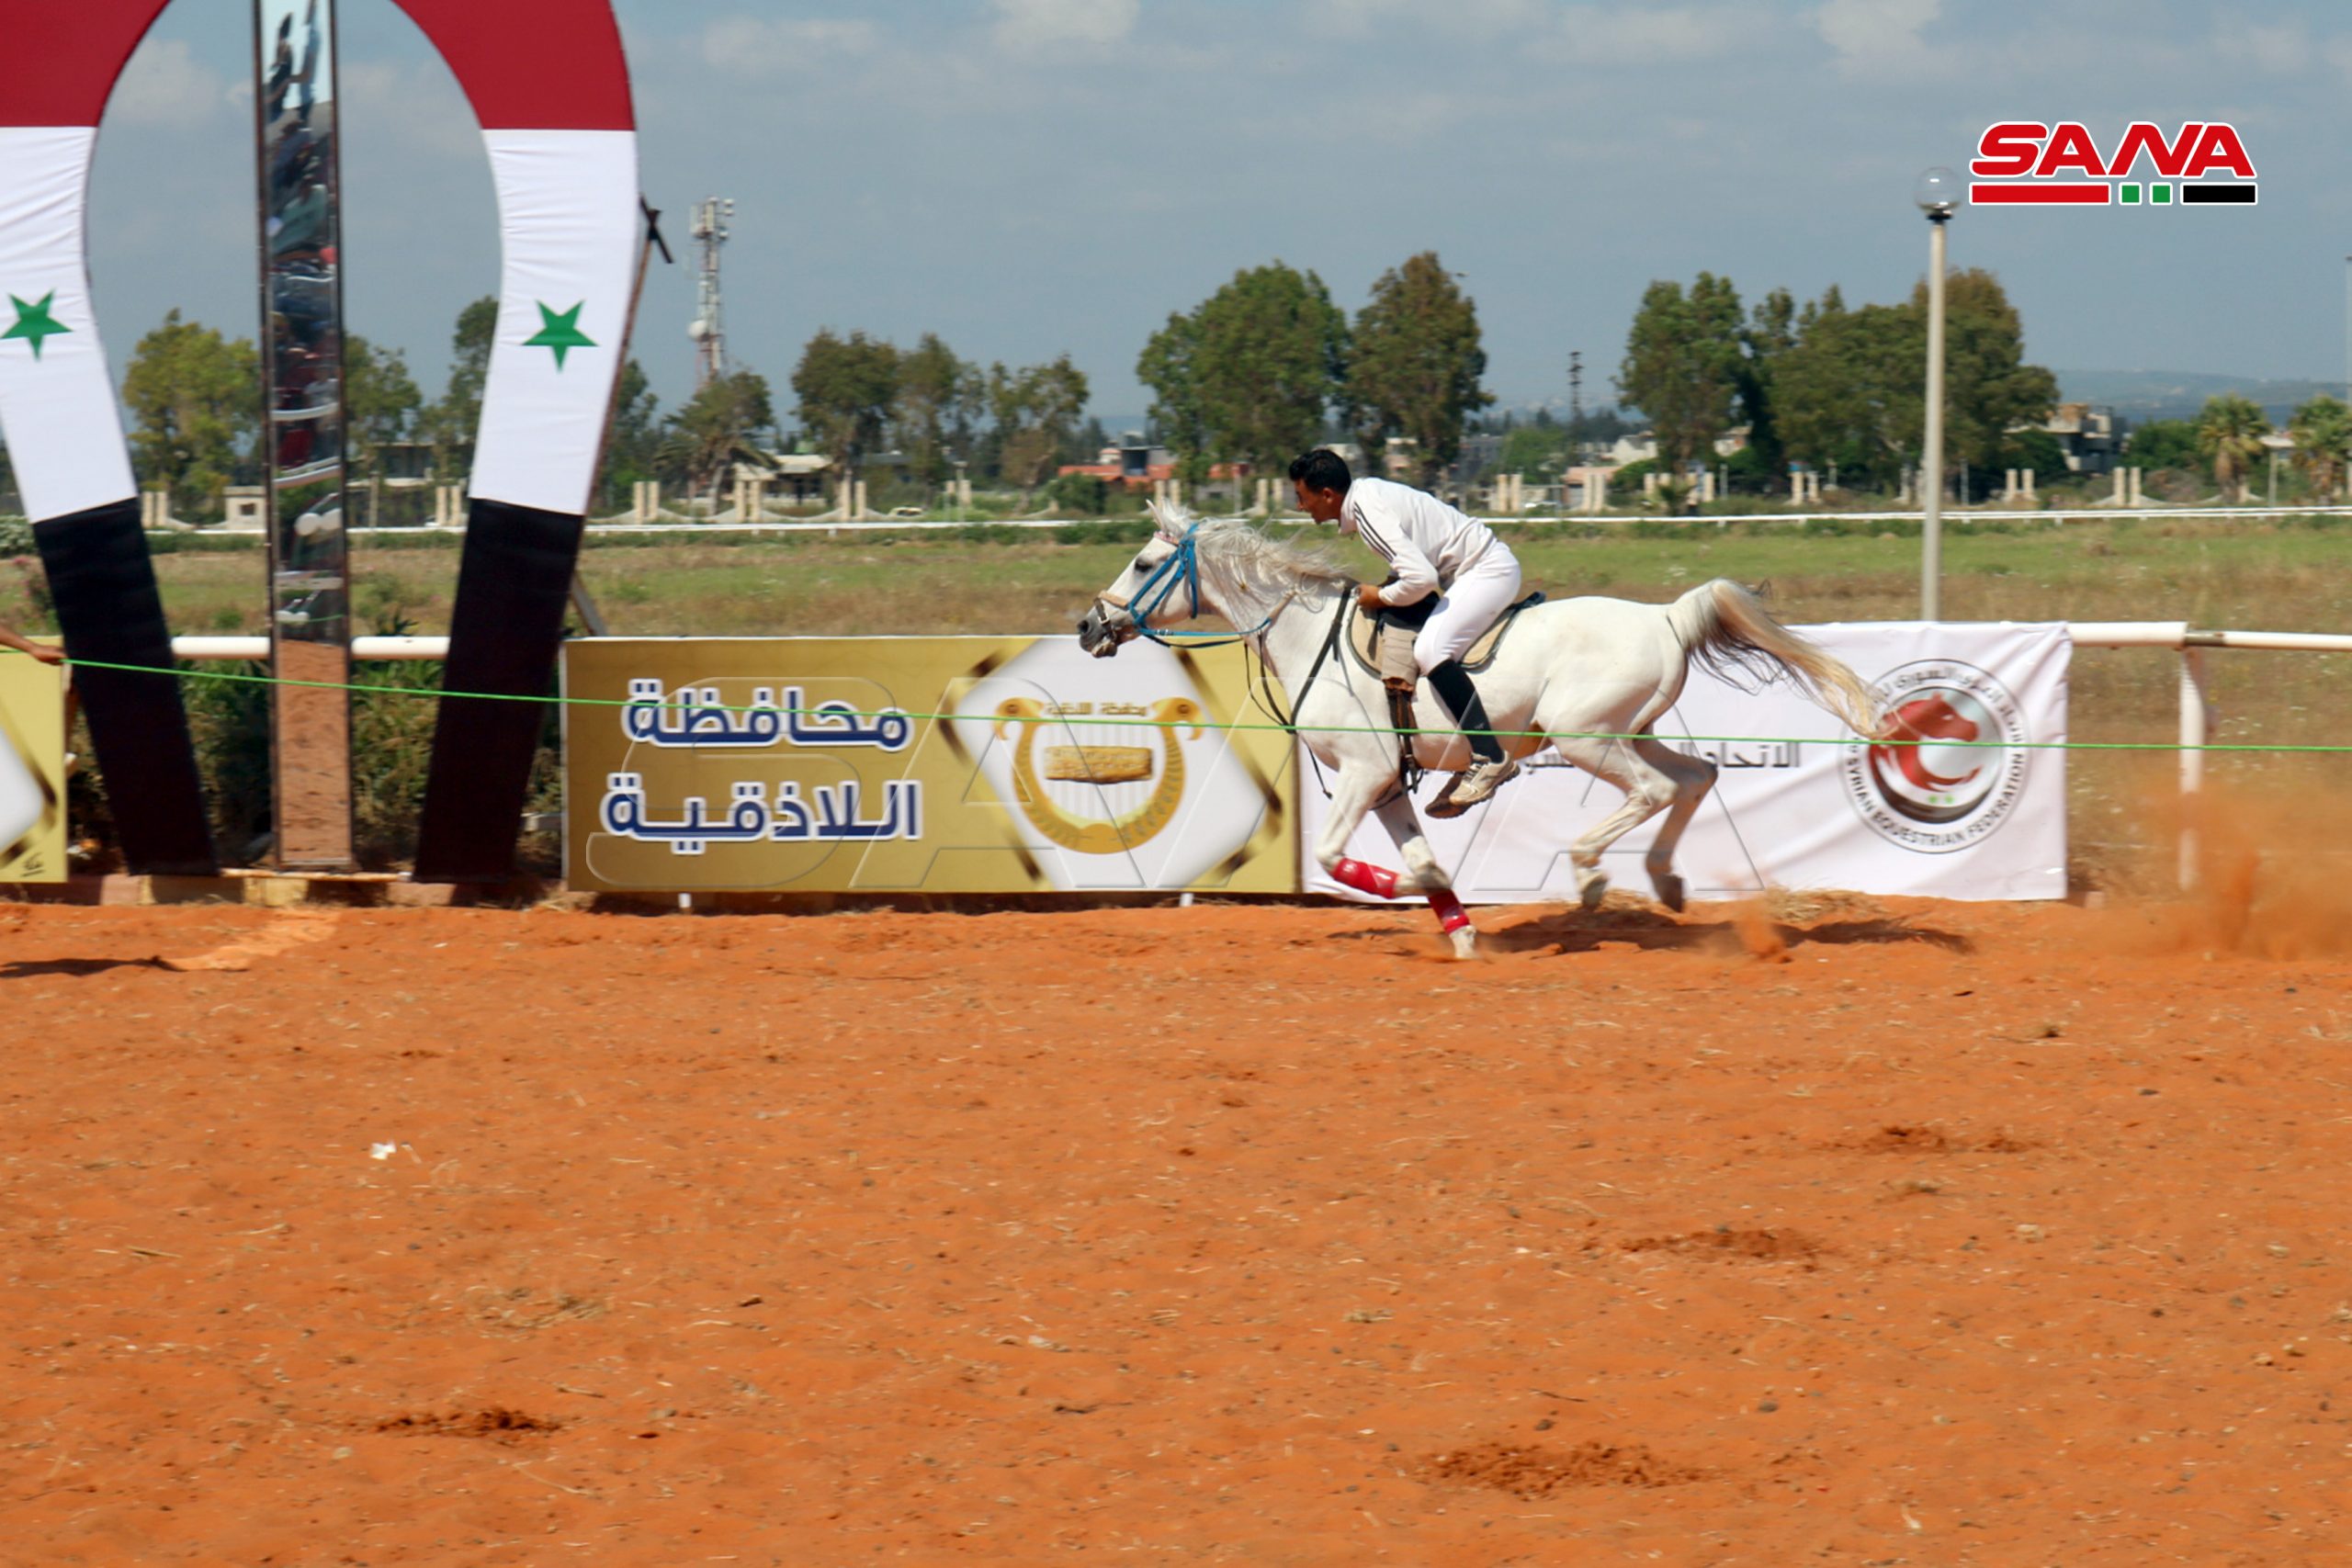 بالصور.. منافسات قوية بين الخيول في مضمار سباقات اللاذقية في سوريا